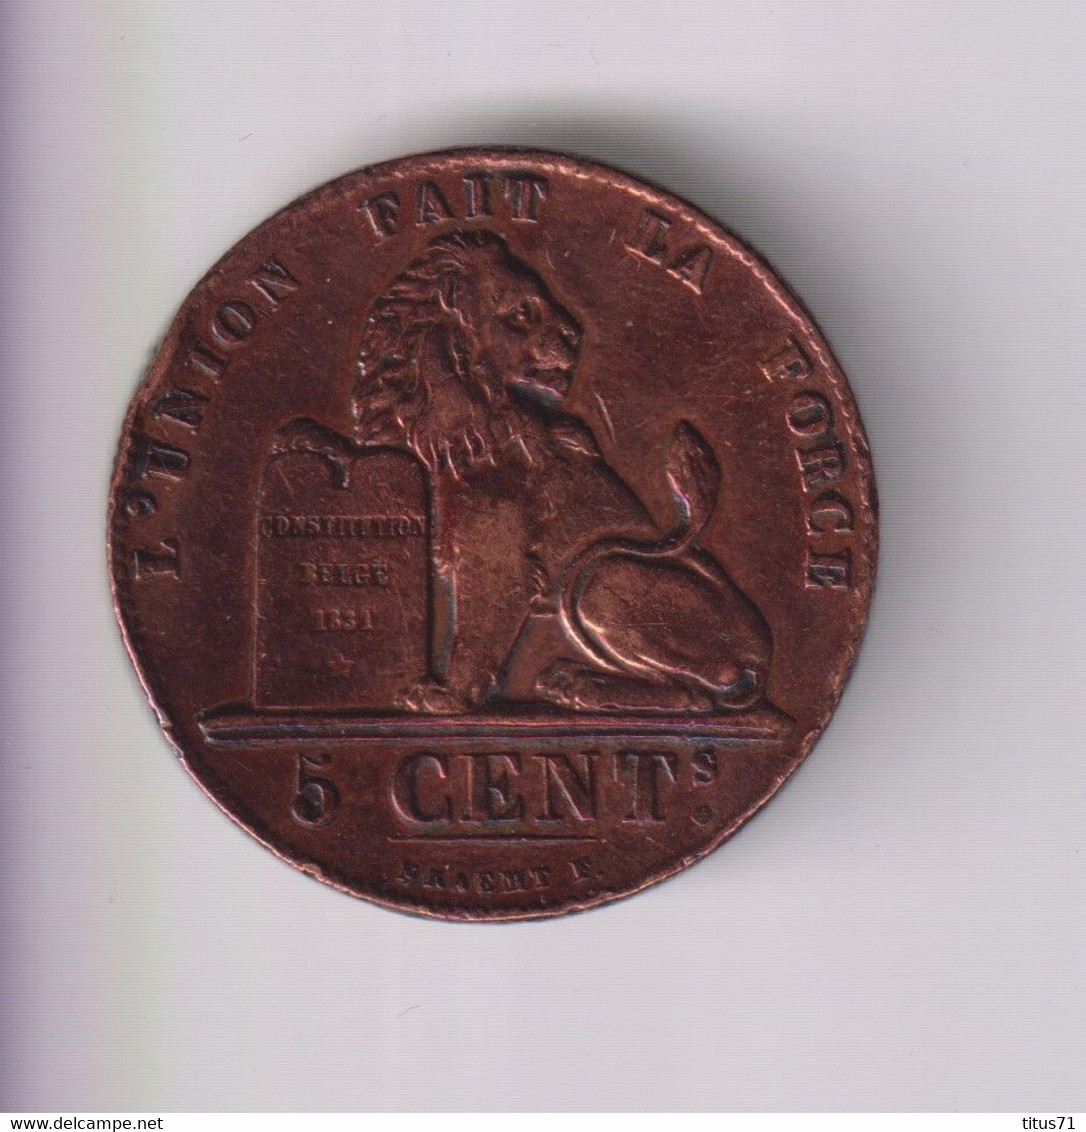 5 Centimes Belgique 1856 TTB+ - 5 Cent